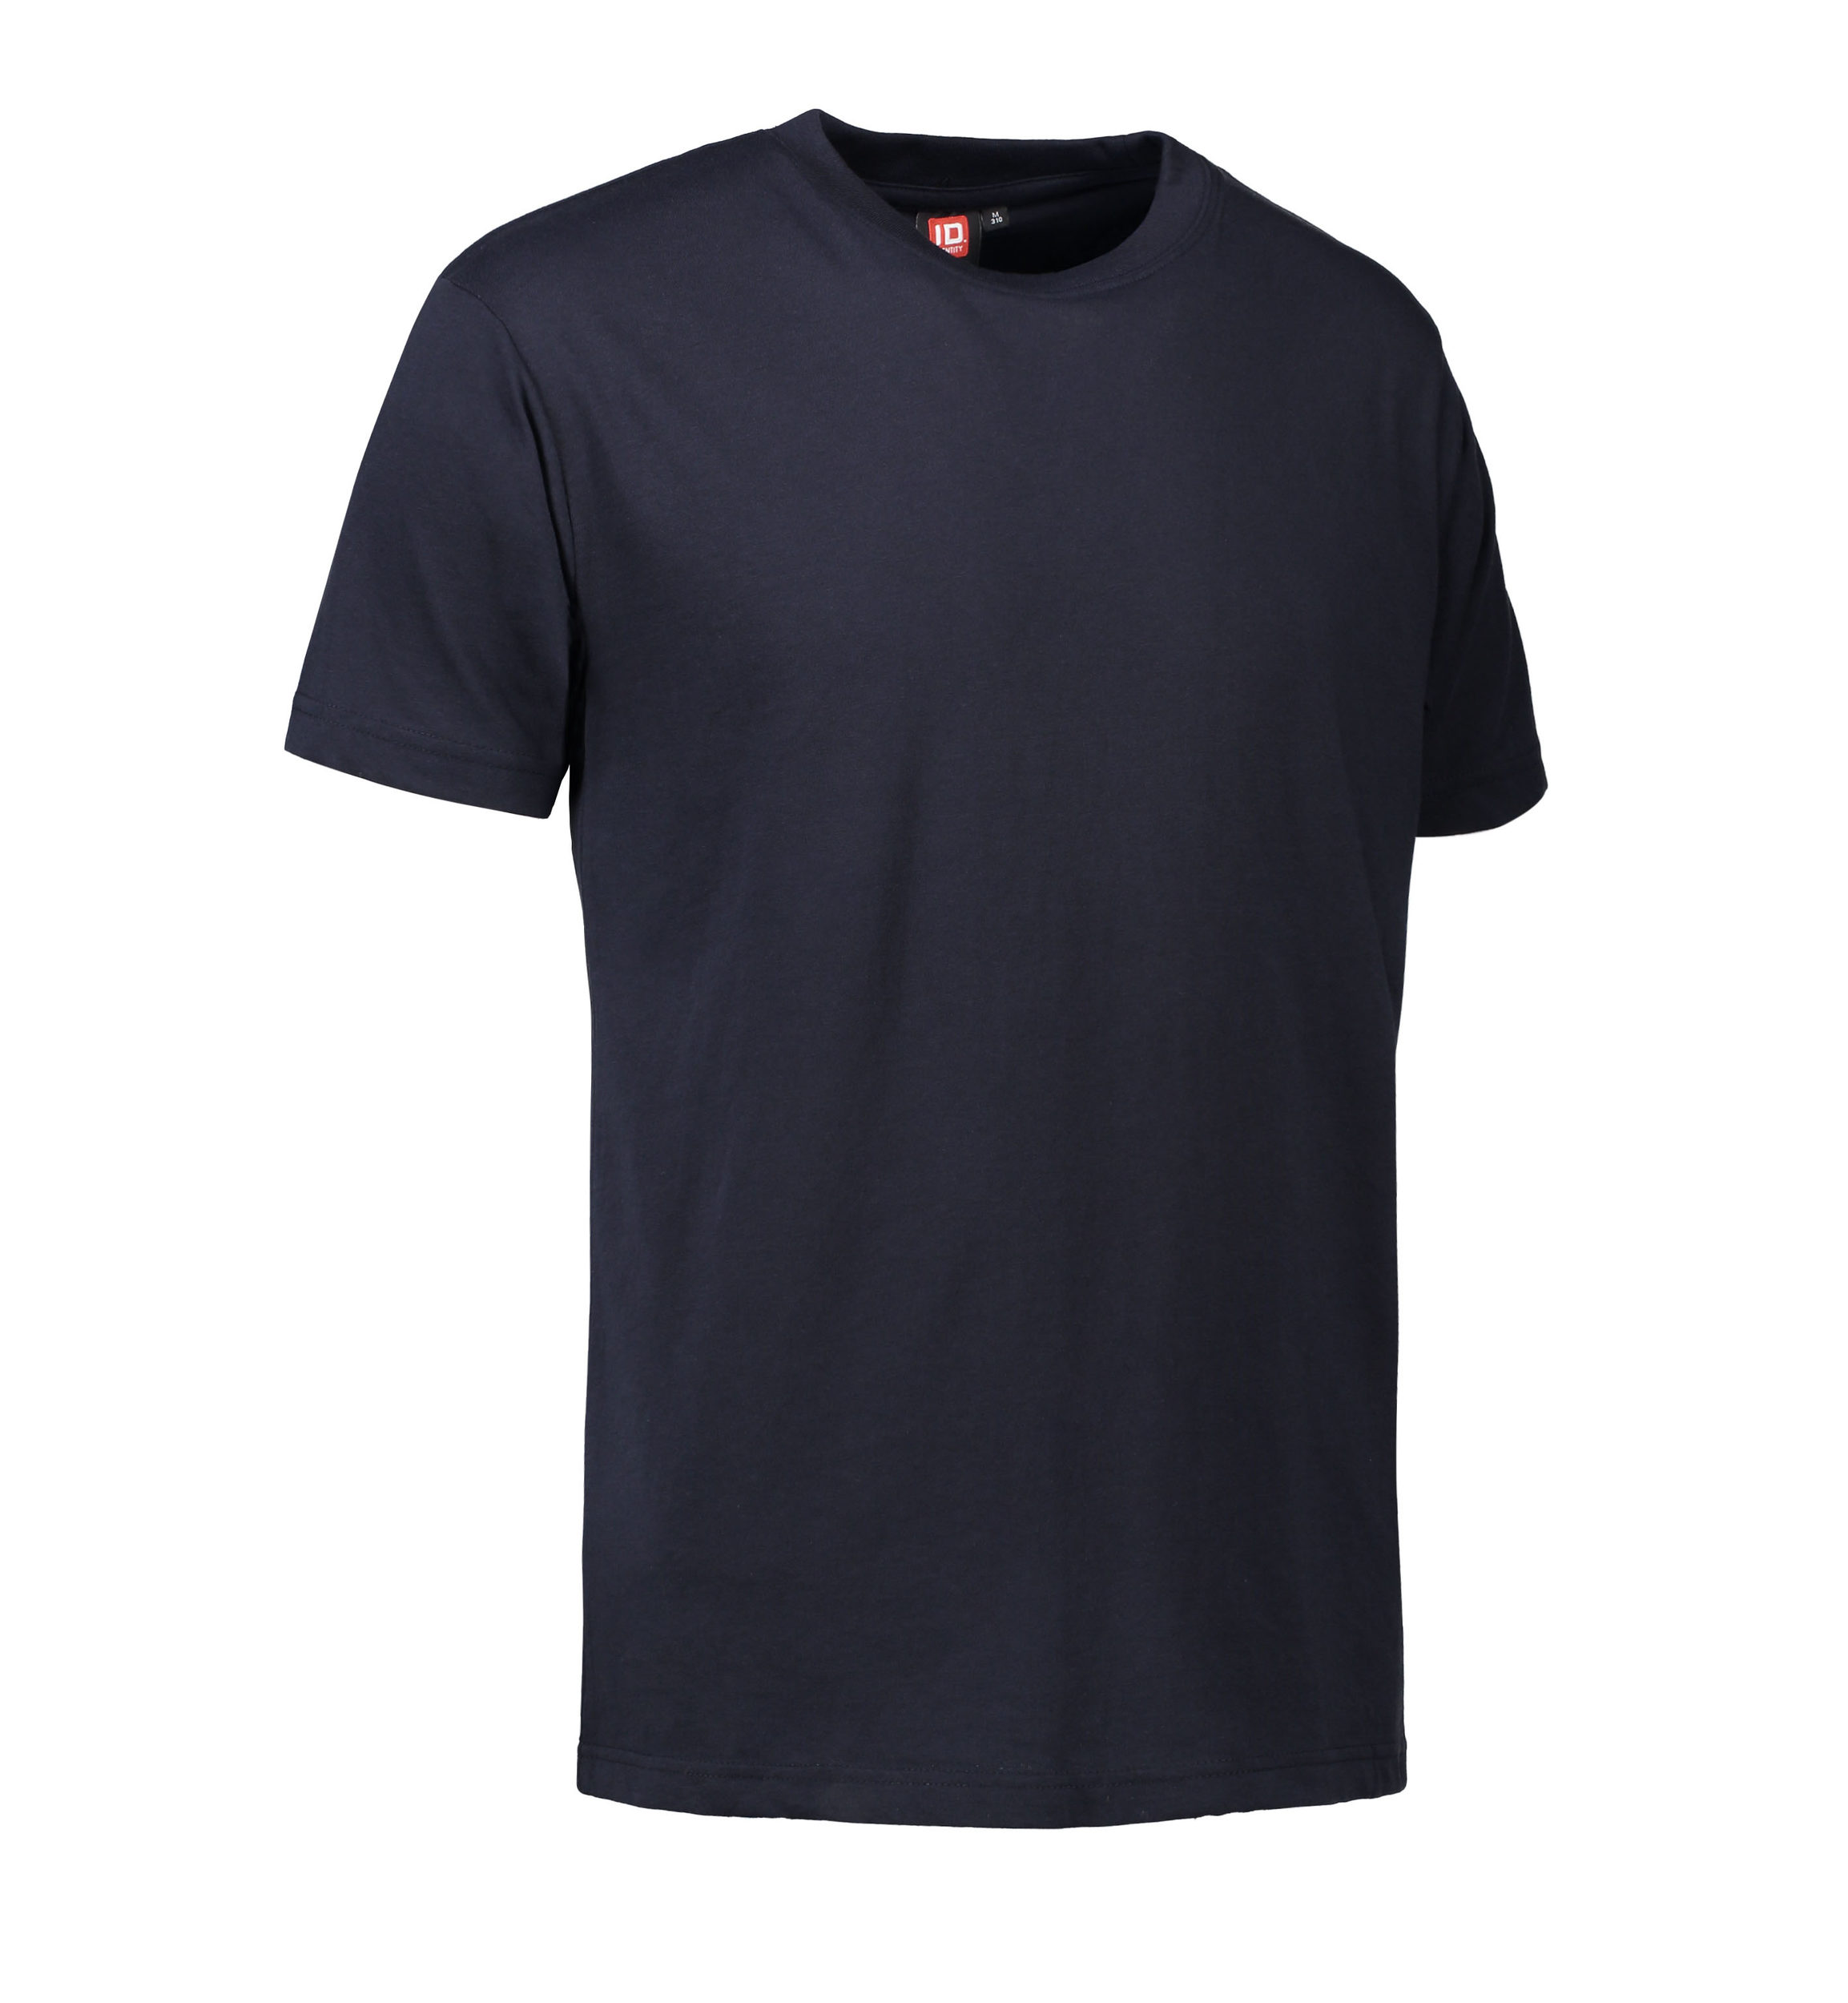 Billede af Slidstærk t-shirt i navy til mænd - XL hos Sygeplejebutikken.dk